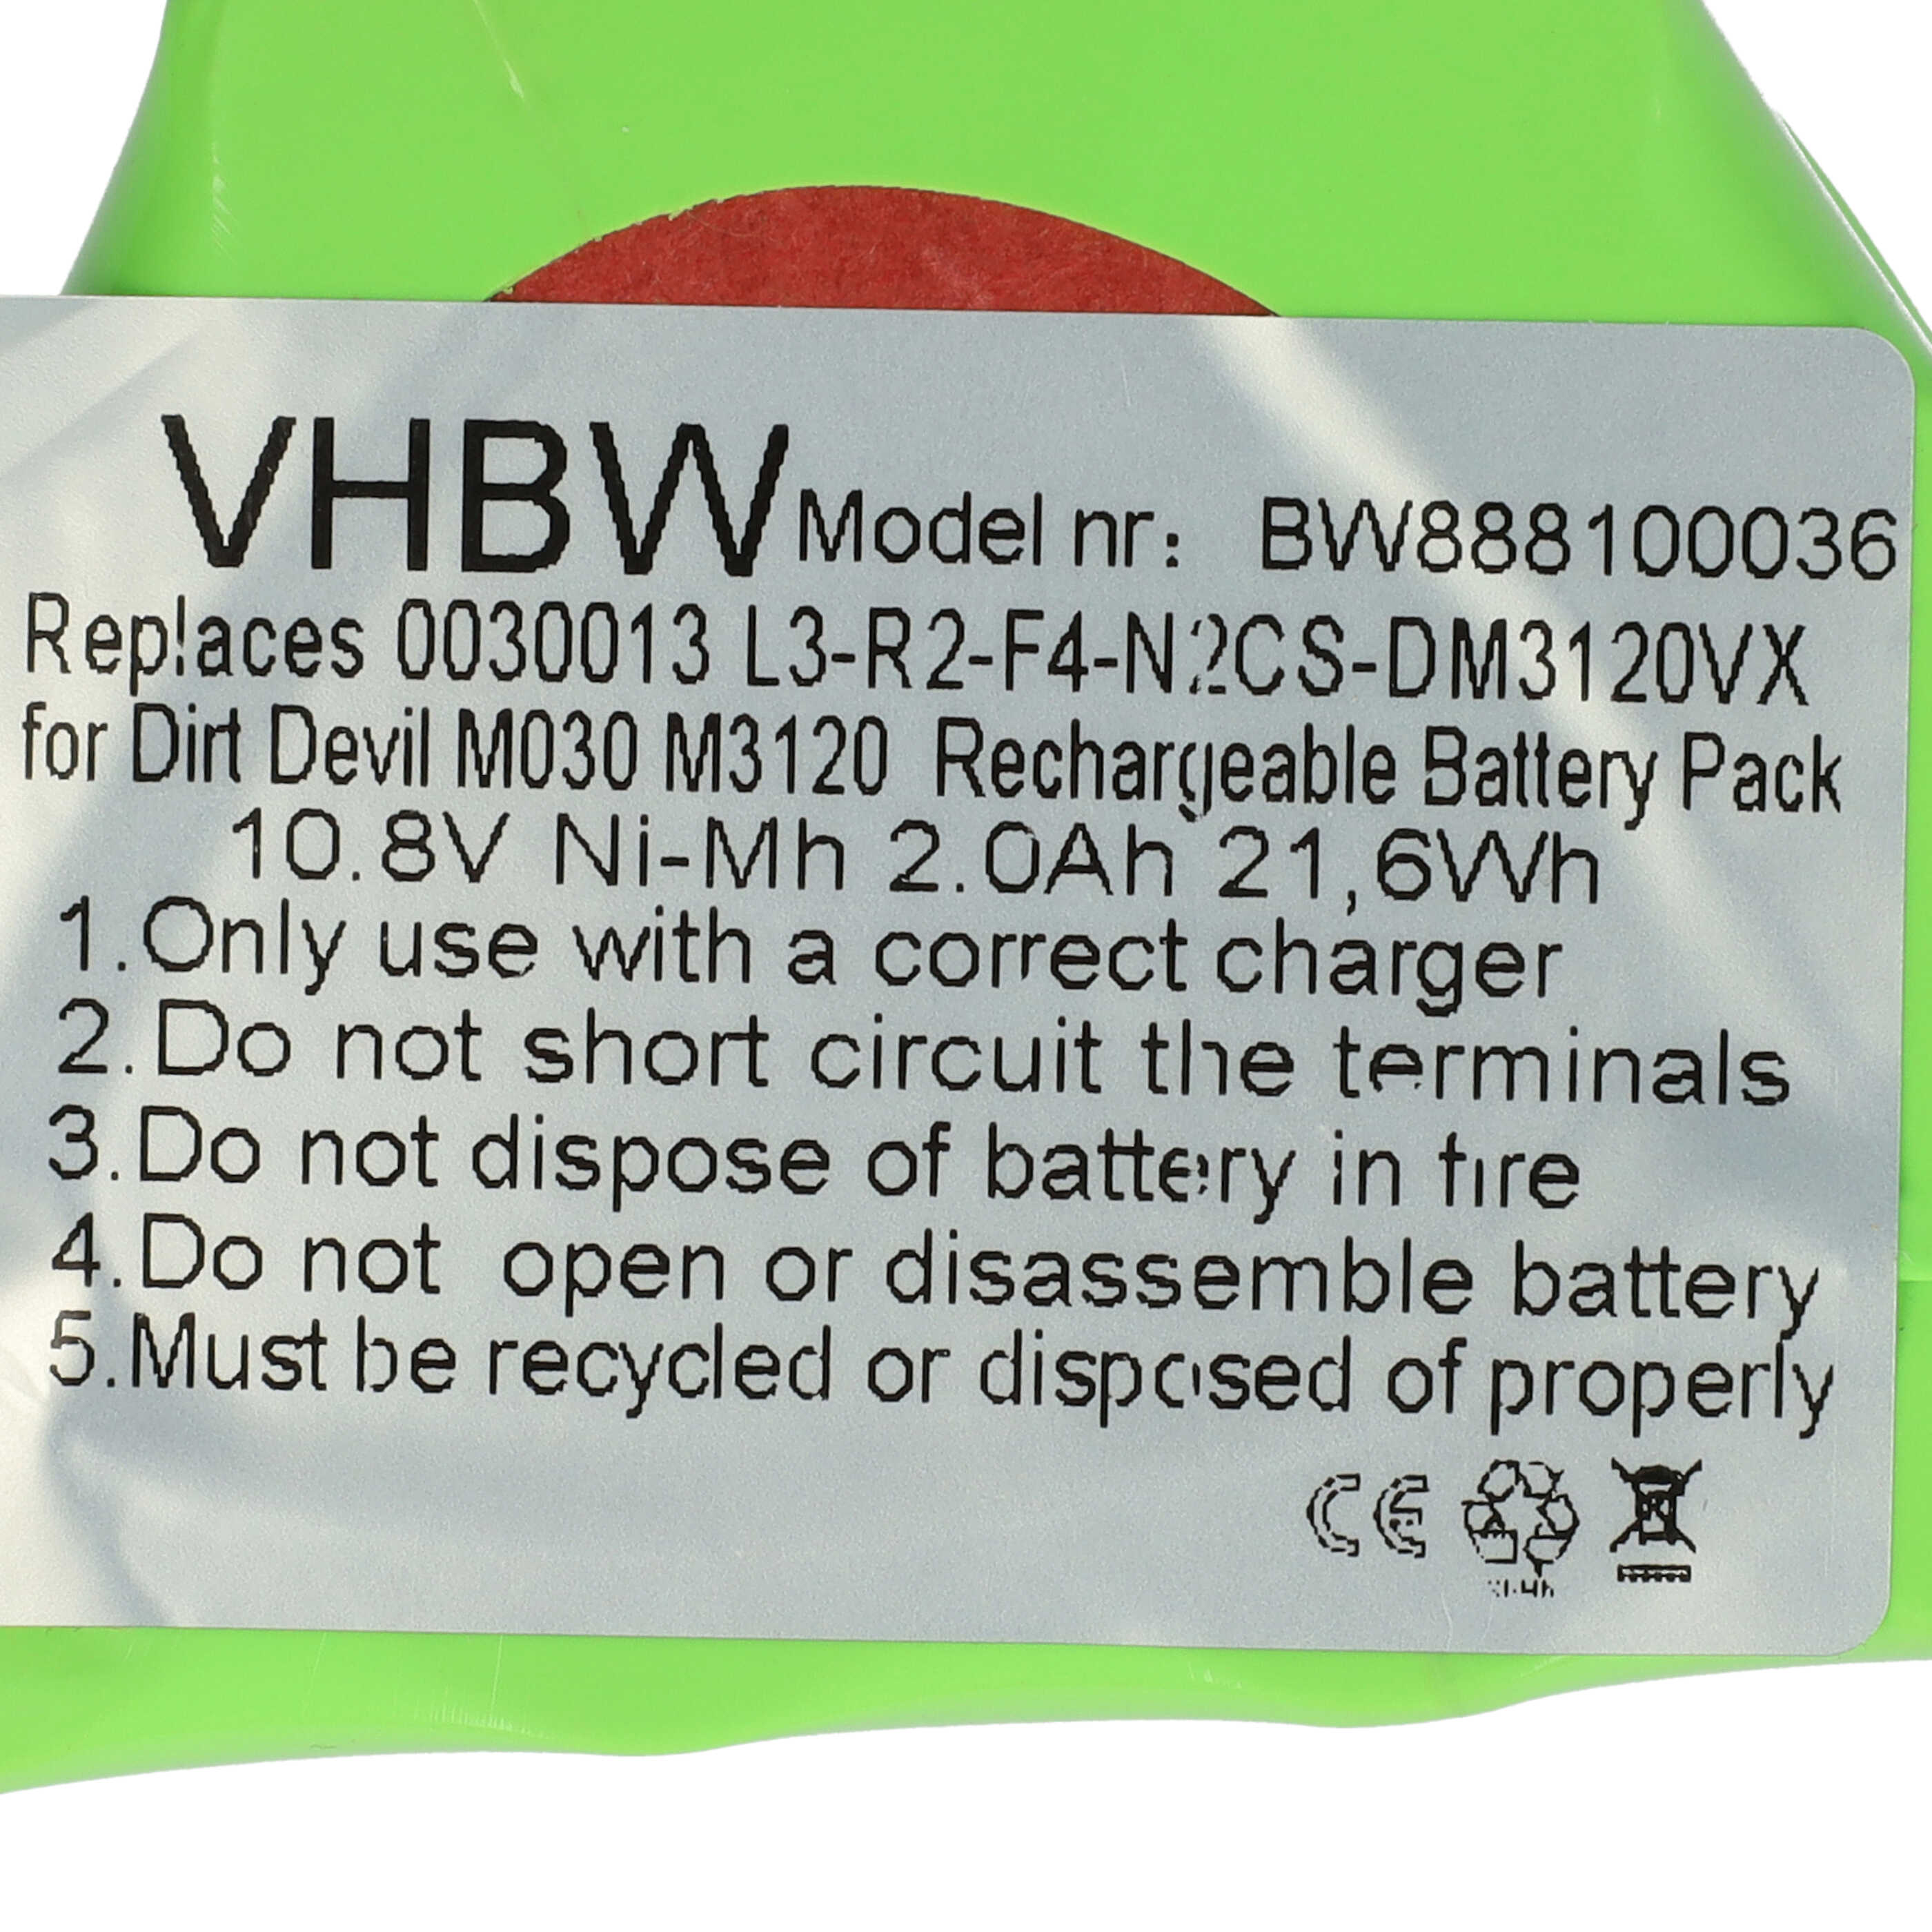 Batterie remplace Dirt Devil 0030013, L3-R2-F4-N2 pour aspirateur - 2000mAh 10,8V NiMH